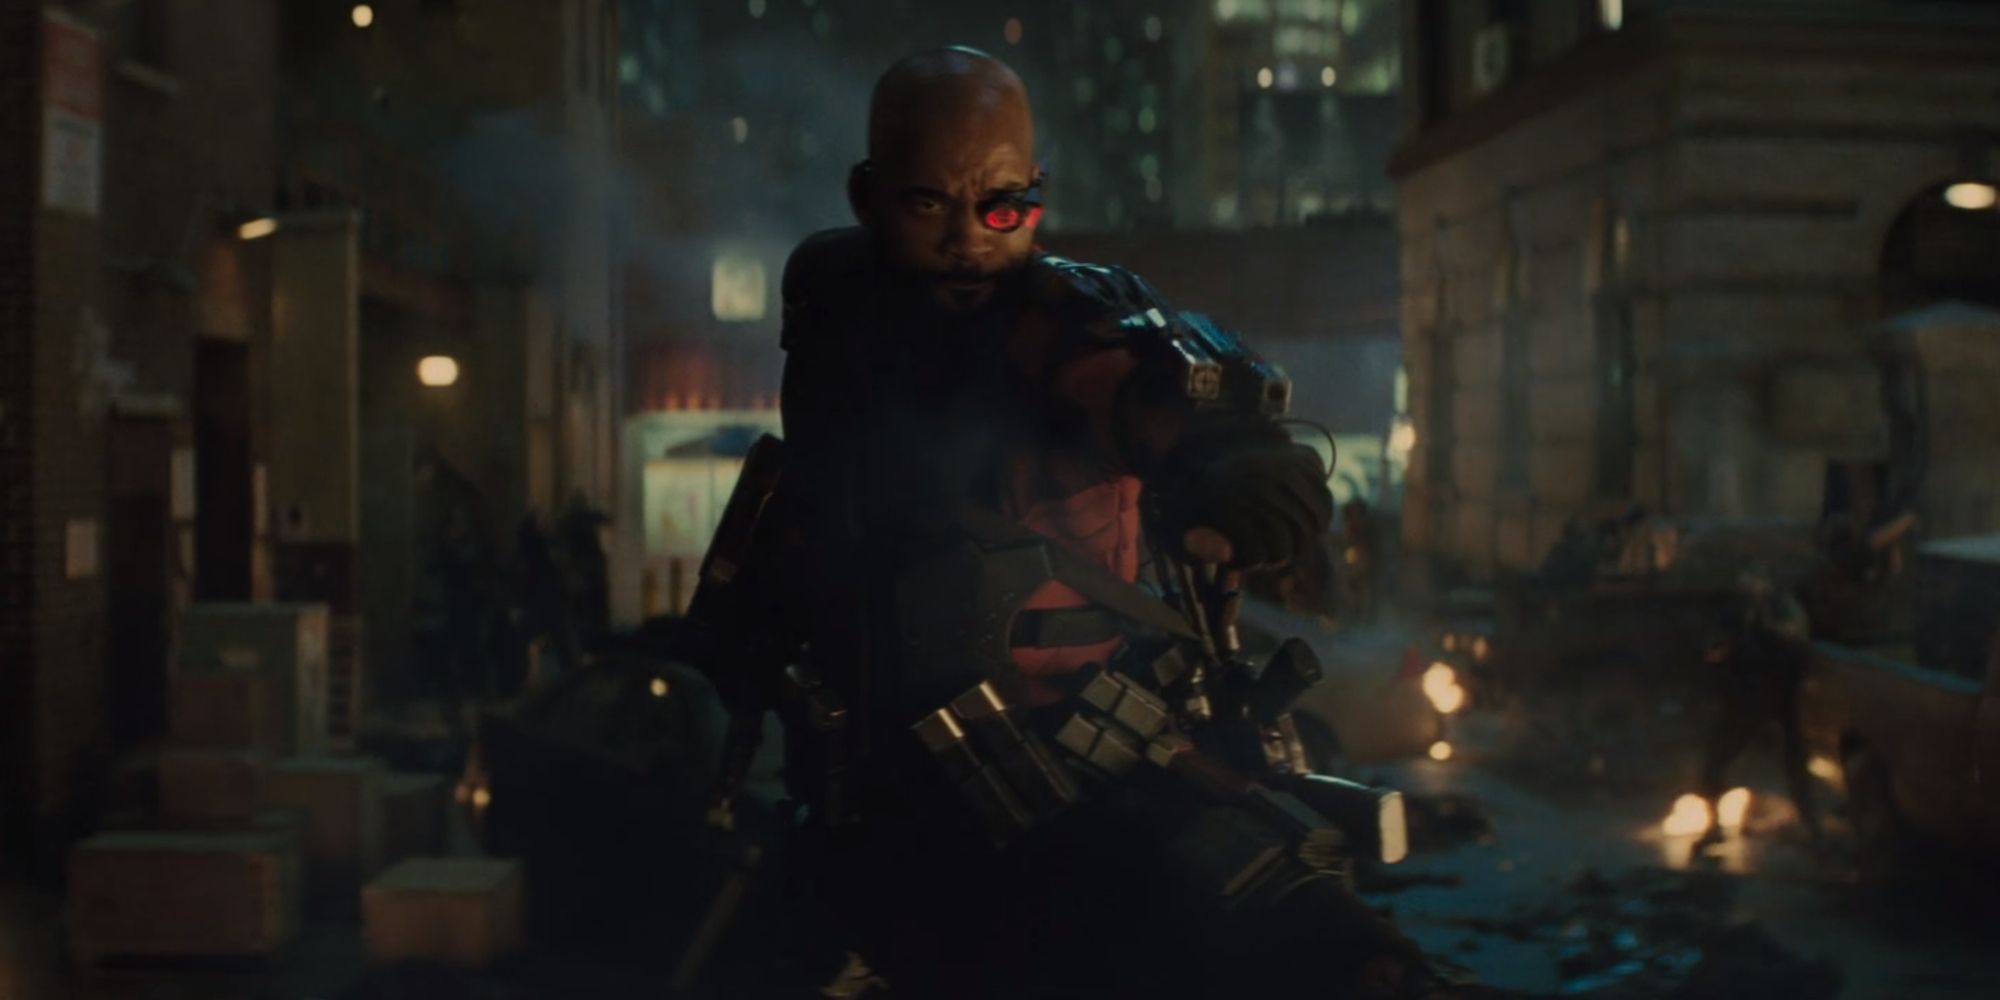 เดดช็อตบนรถต่อสู้กับซอมบี้ด้วยปืนที่ข้อมือของเขาใน Suicide Squad (2016)